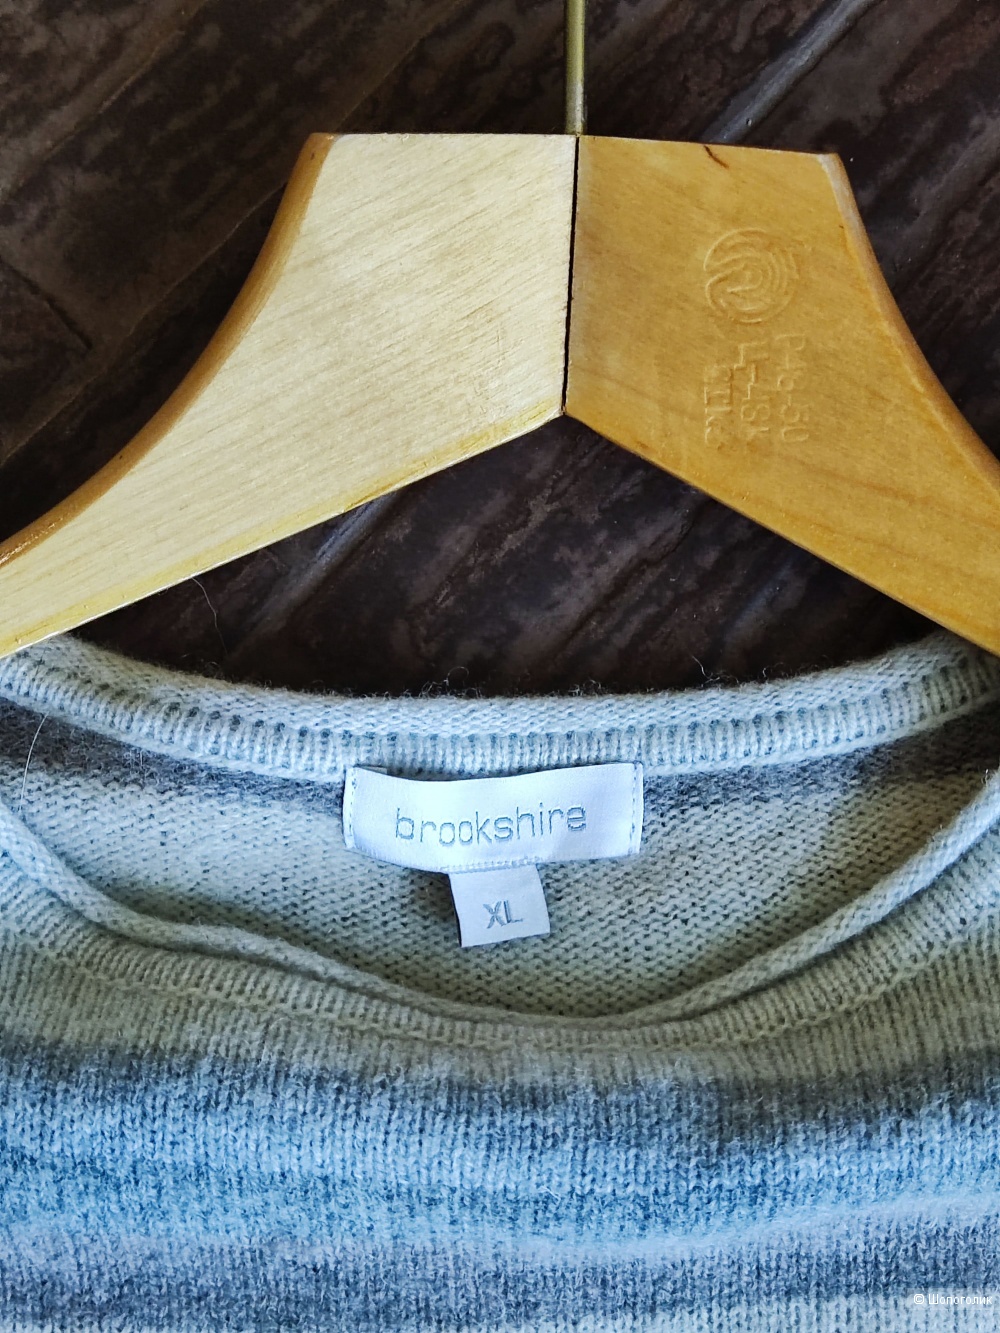 Джемпер/свитер Вrookshire, р. XL( маломерит на M,L)